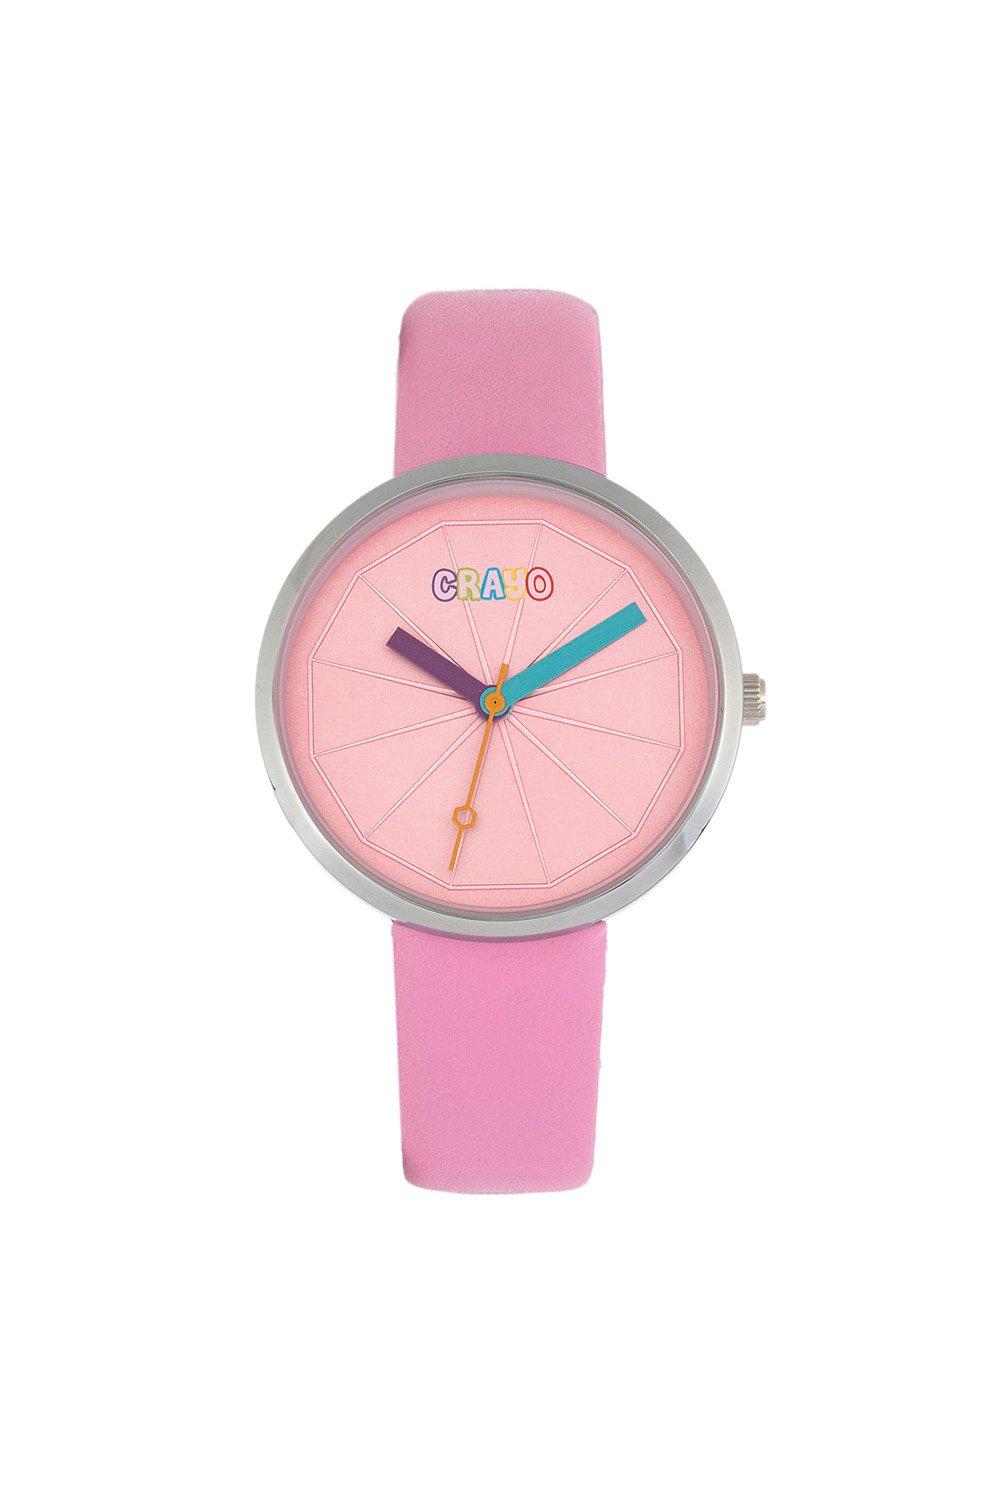 Метрические часы унисекс Crayo, розовый